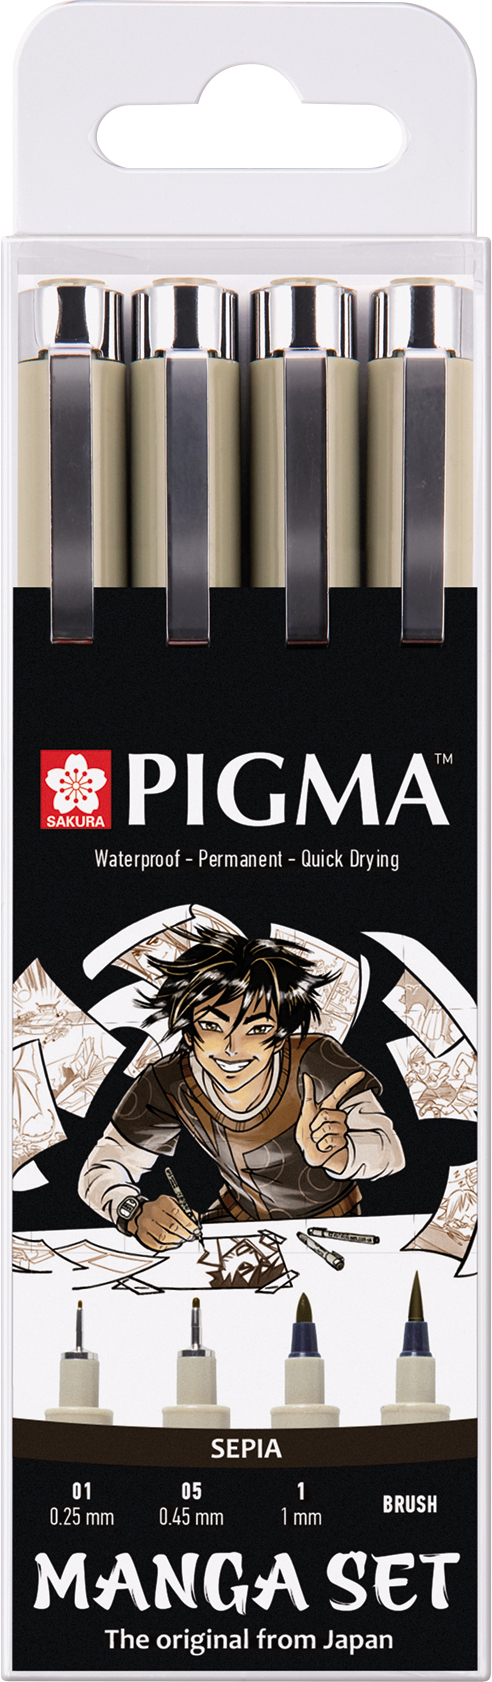 SAKURA Manga Pigma Set POXSDKMAN4 sepia, 2xMic/1xGraph/1xBrush